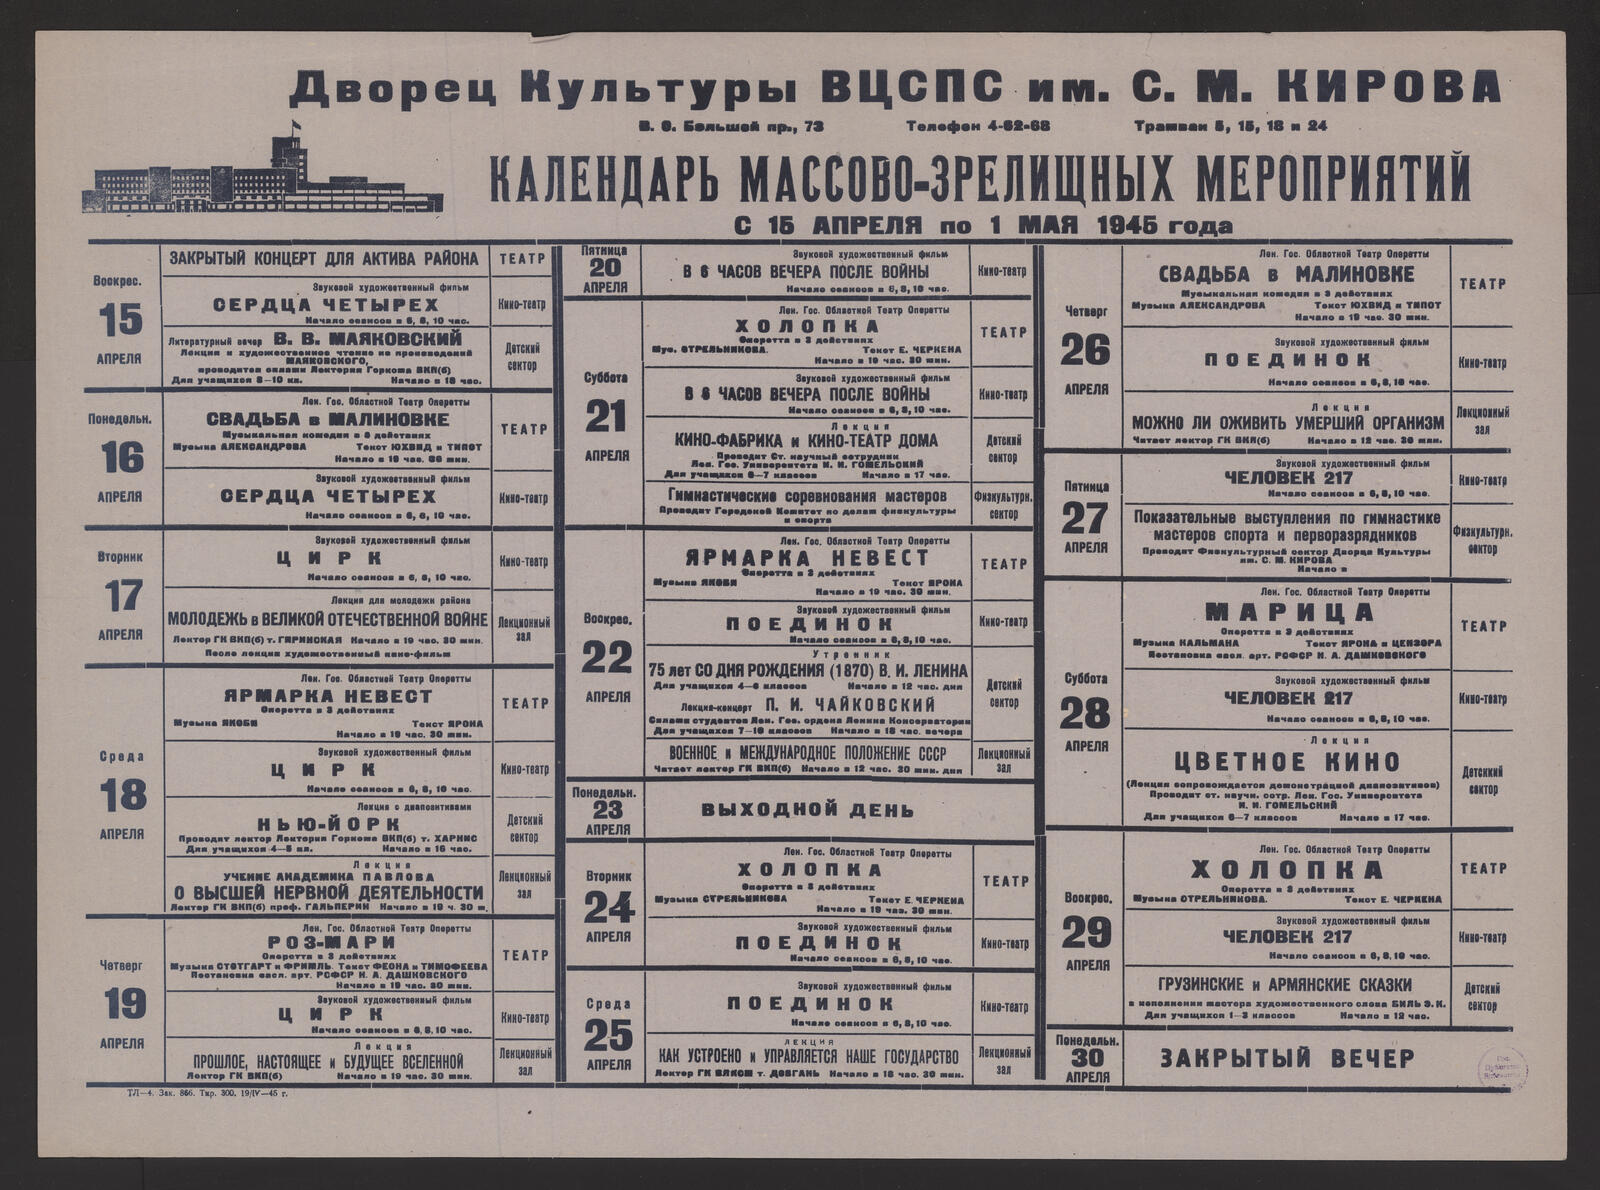 Изображение Календарь массово-зрелищных мероприятий с 15 апреля по 1 мая 1945 года